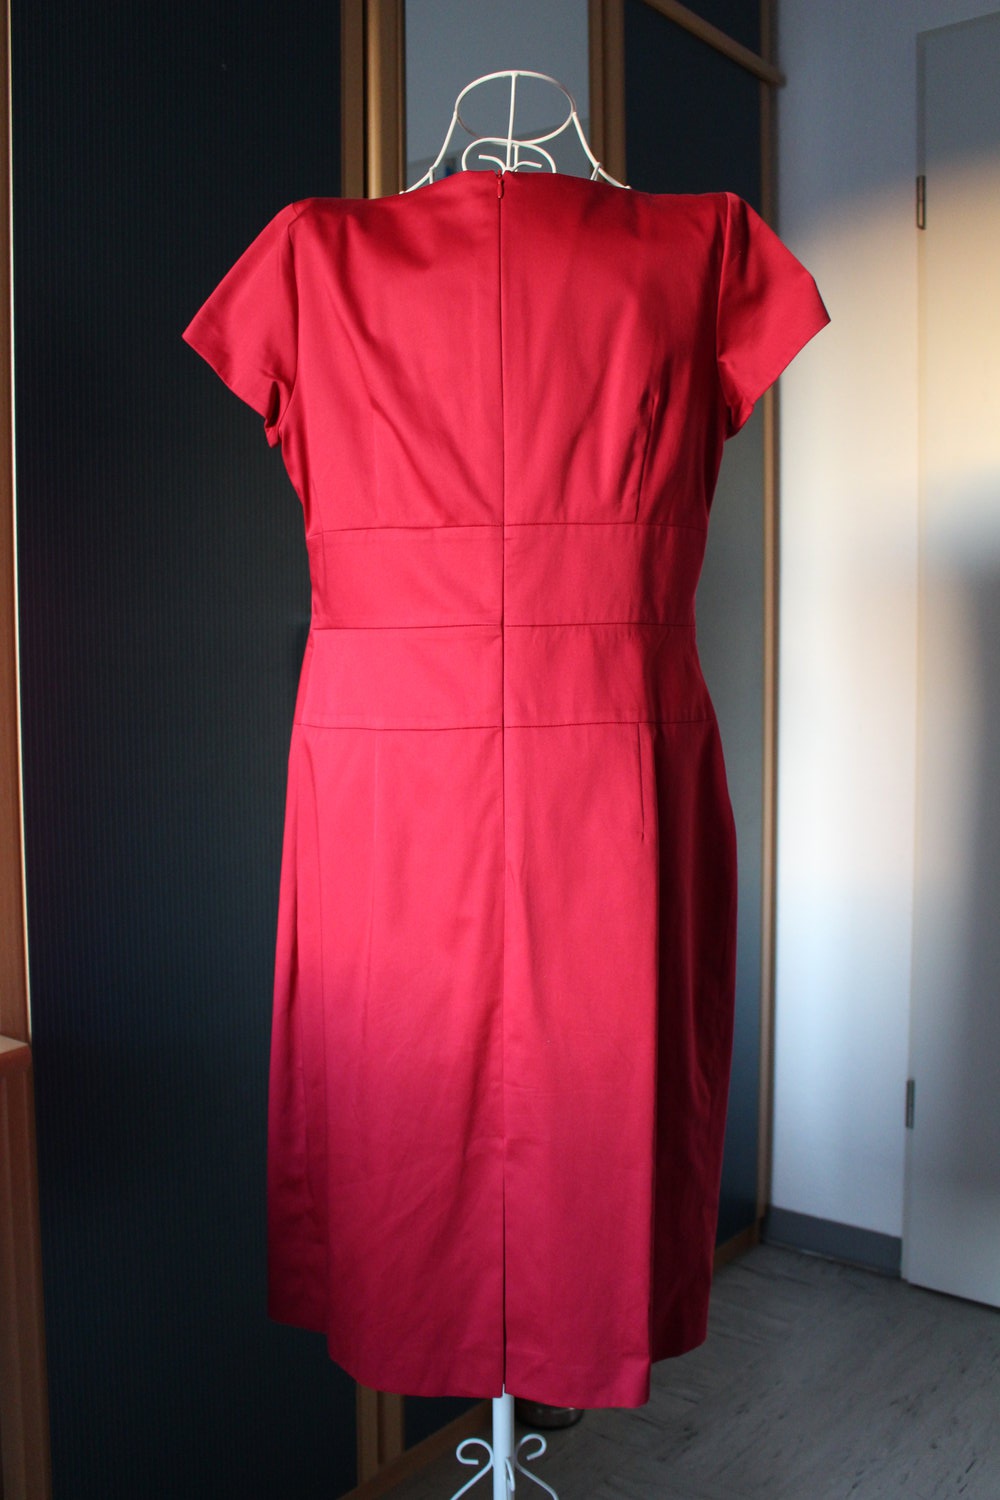 363. Schönes 42, Gr. Kleid von Daniel Hechter/Paris/, fuchsia-rot